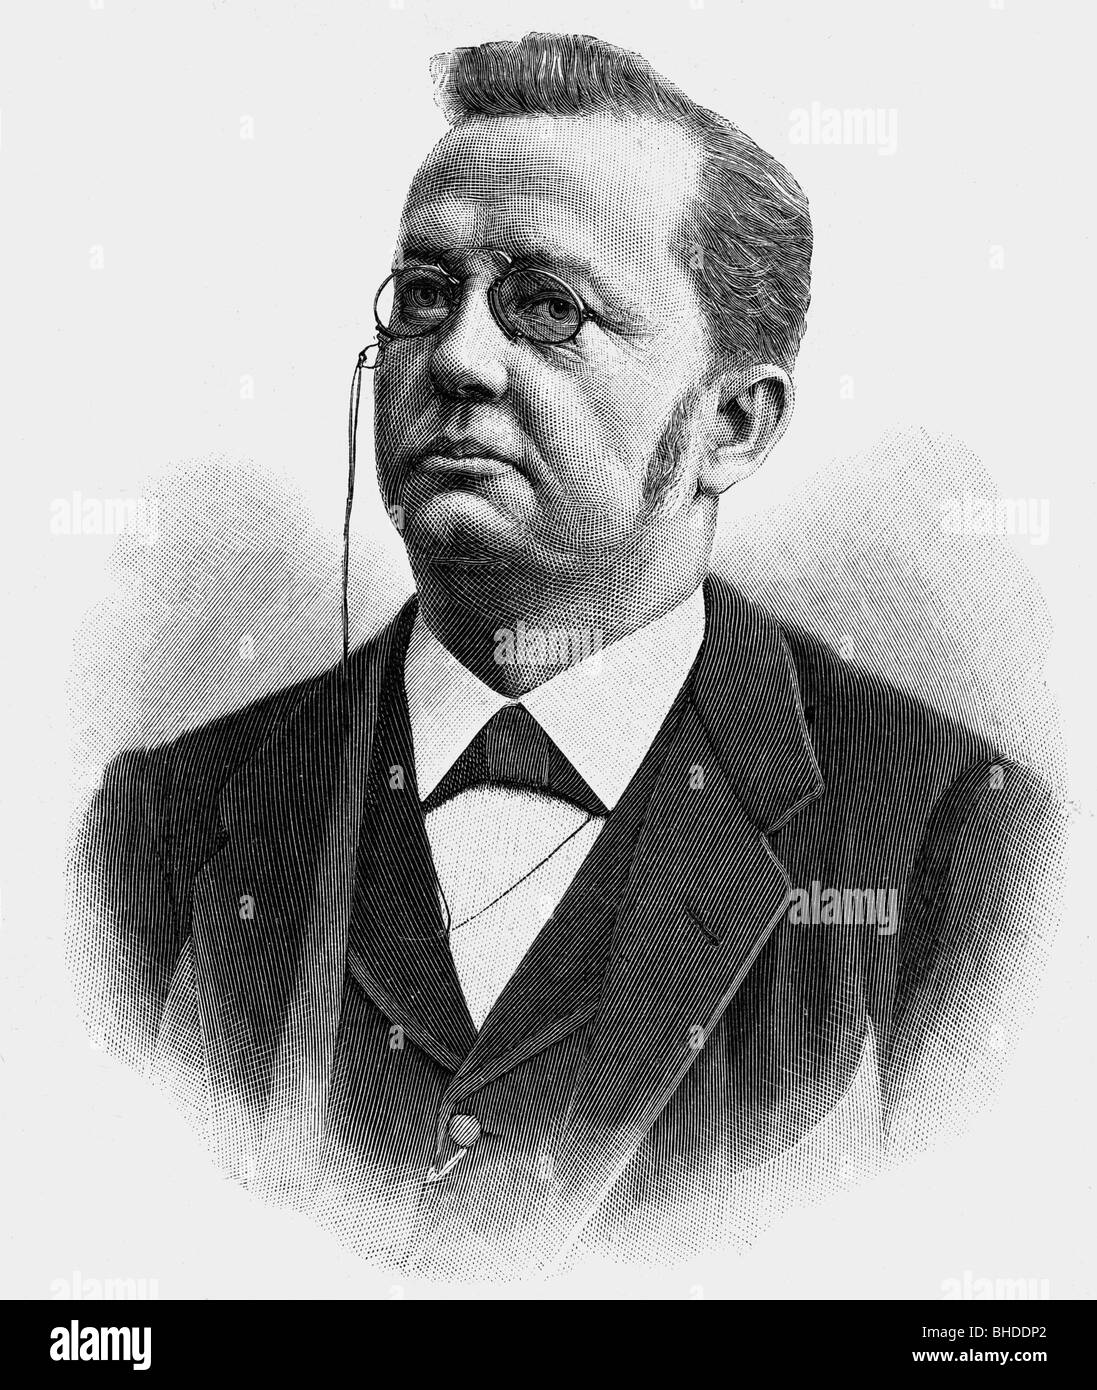 Deucher, Adolf, 15.2.1831 - 10.7.1912, Schweizer Bundespräsident 1897, Porträt, Holzgravur, Stockfoto